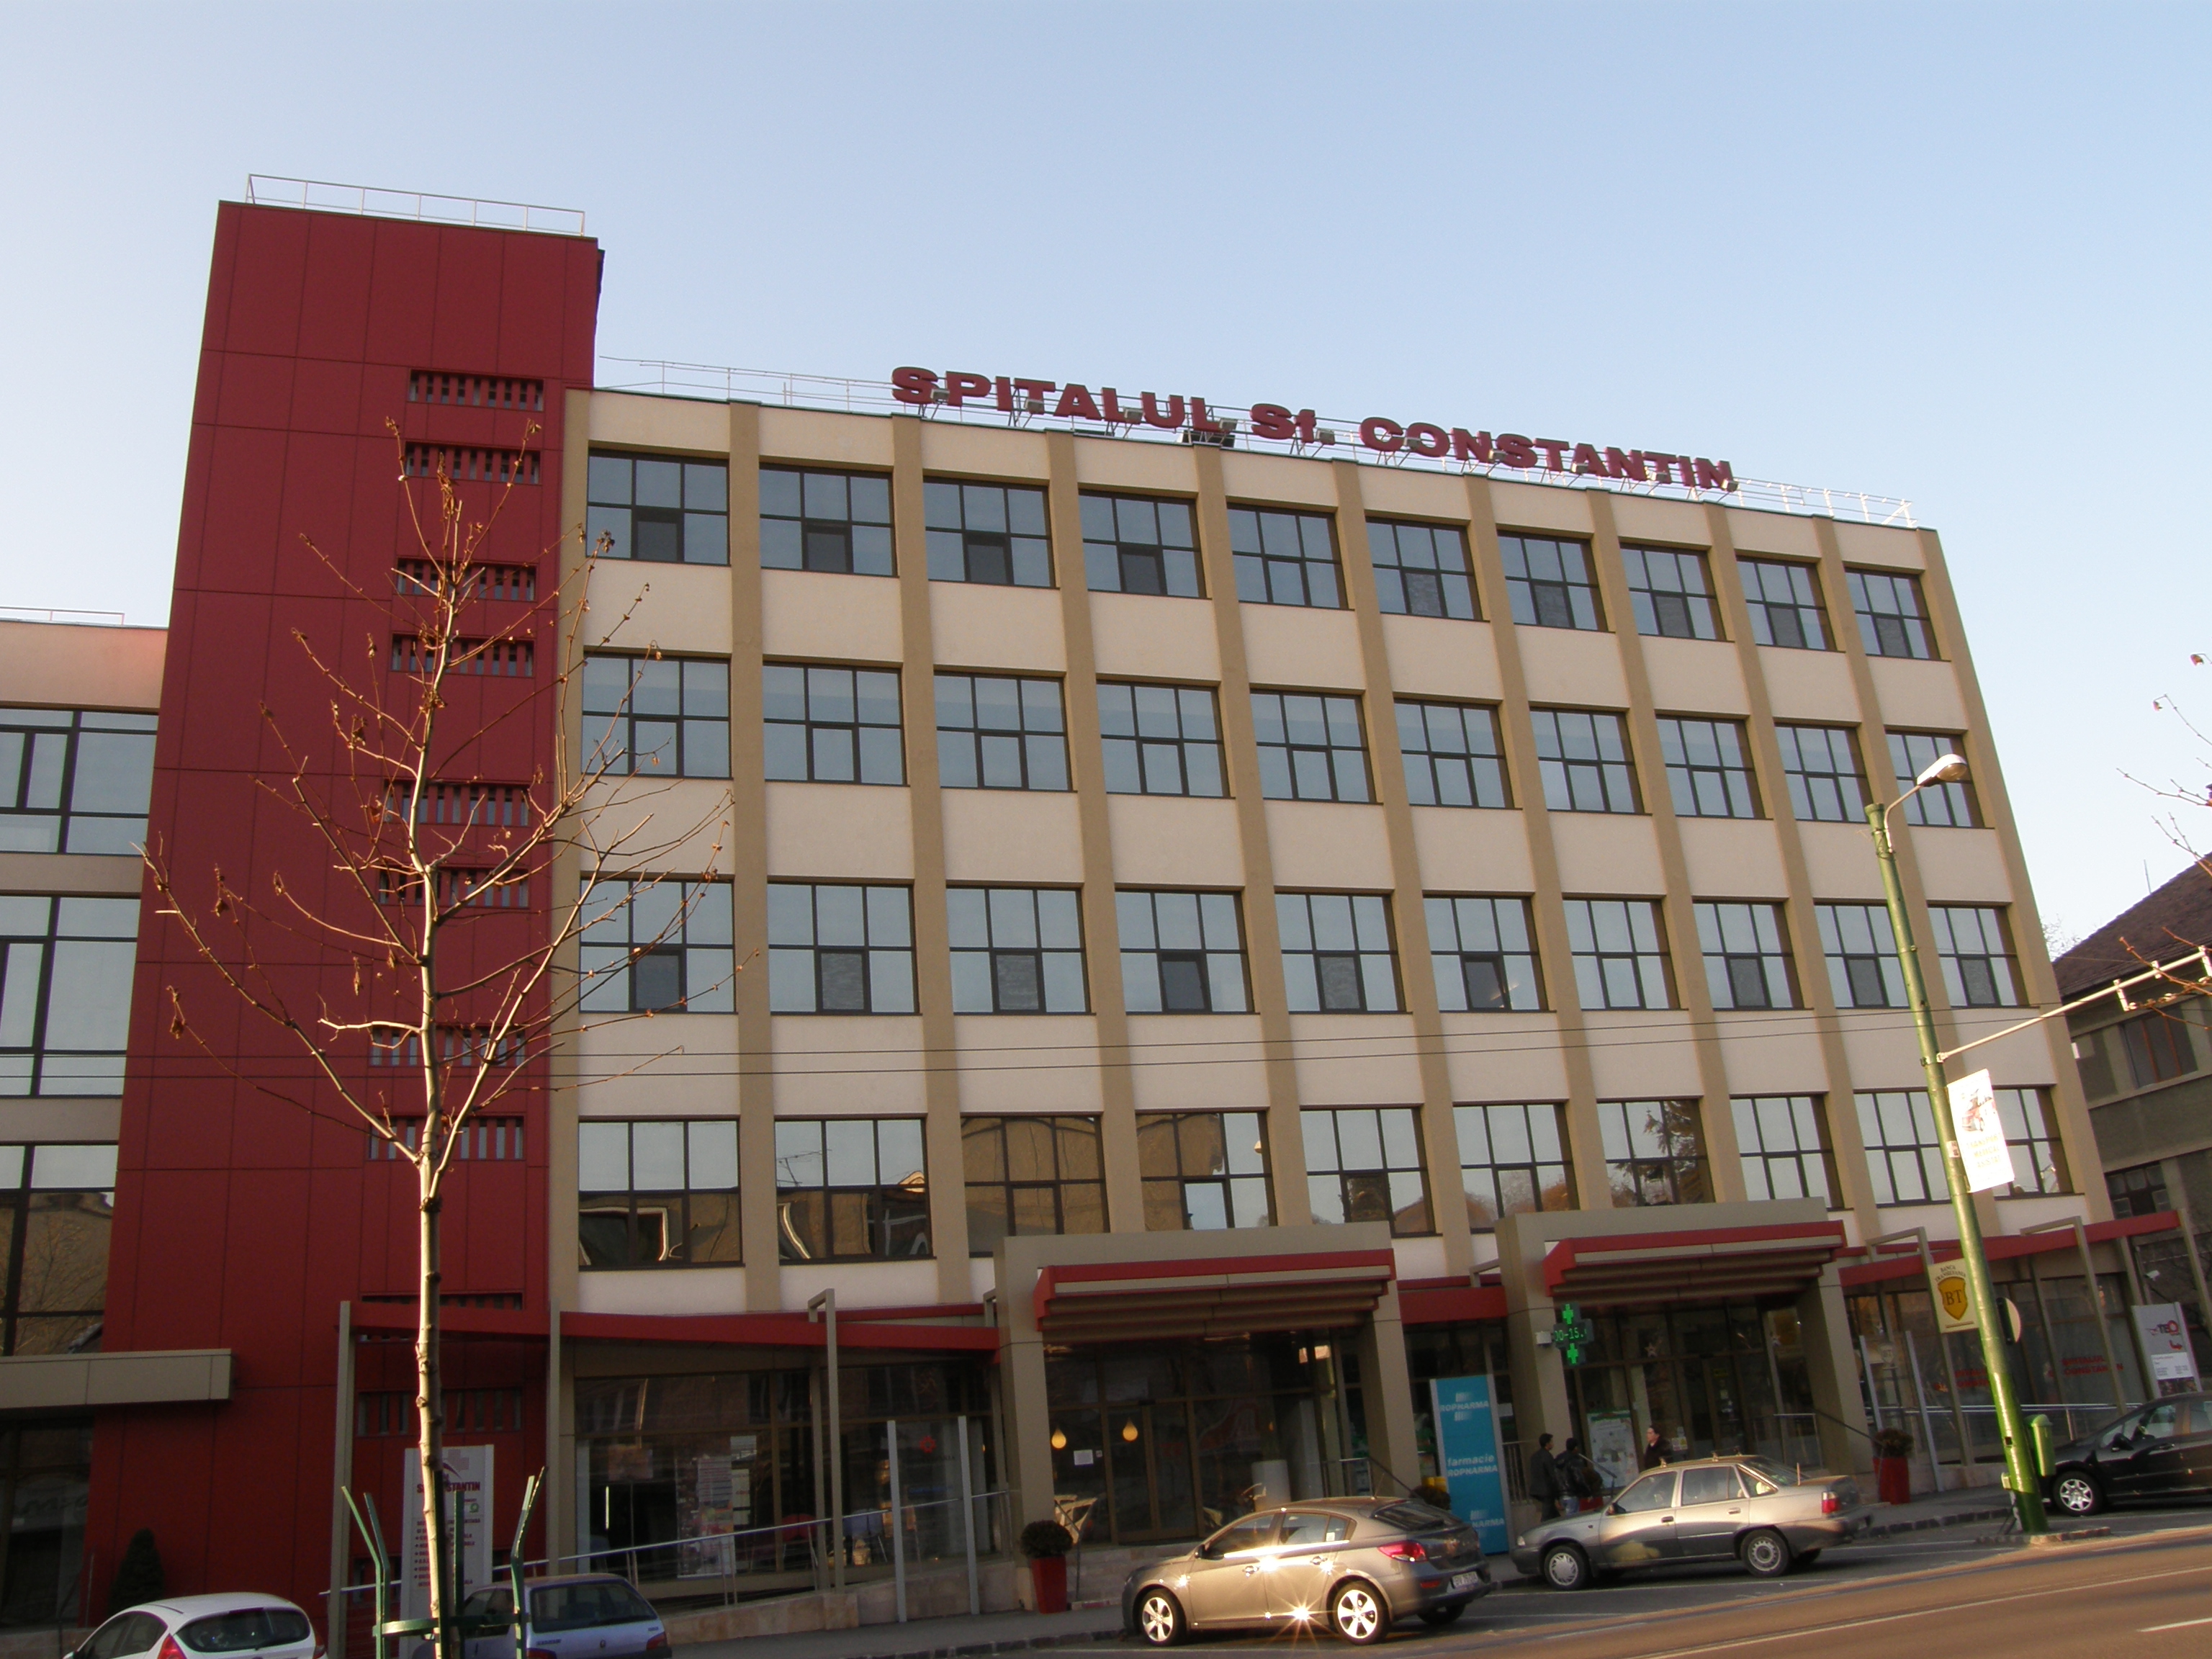 Spitalul Sf. Constantin Brasov – Excelenta in sanatate